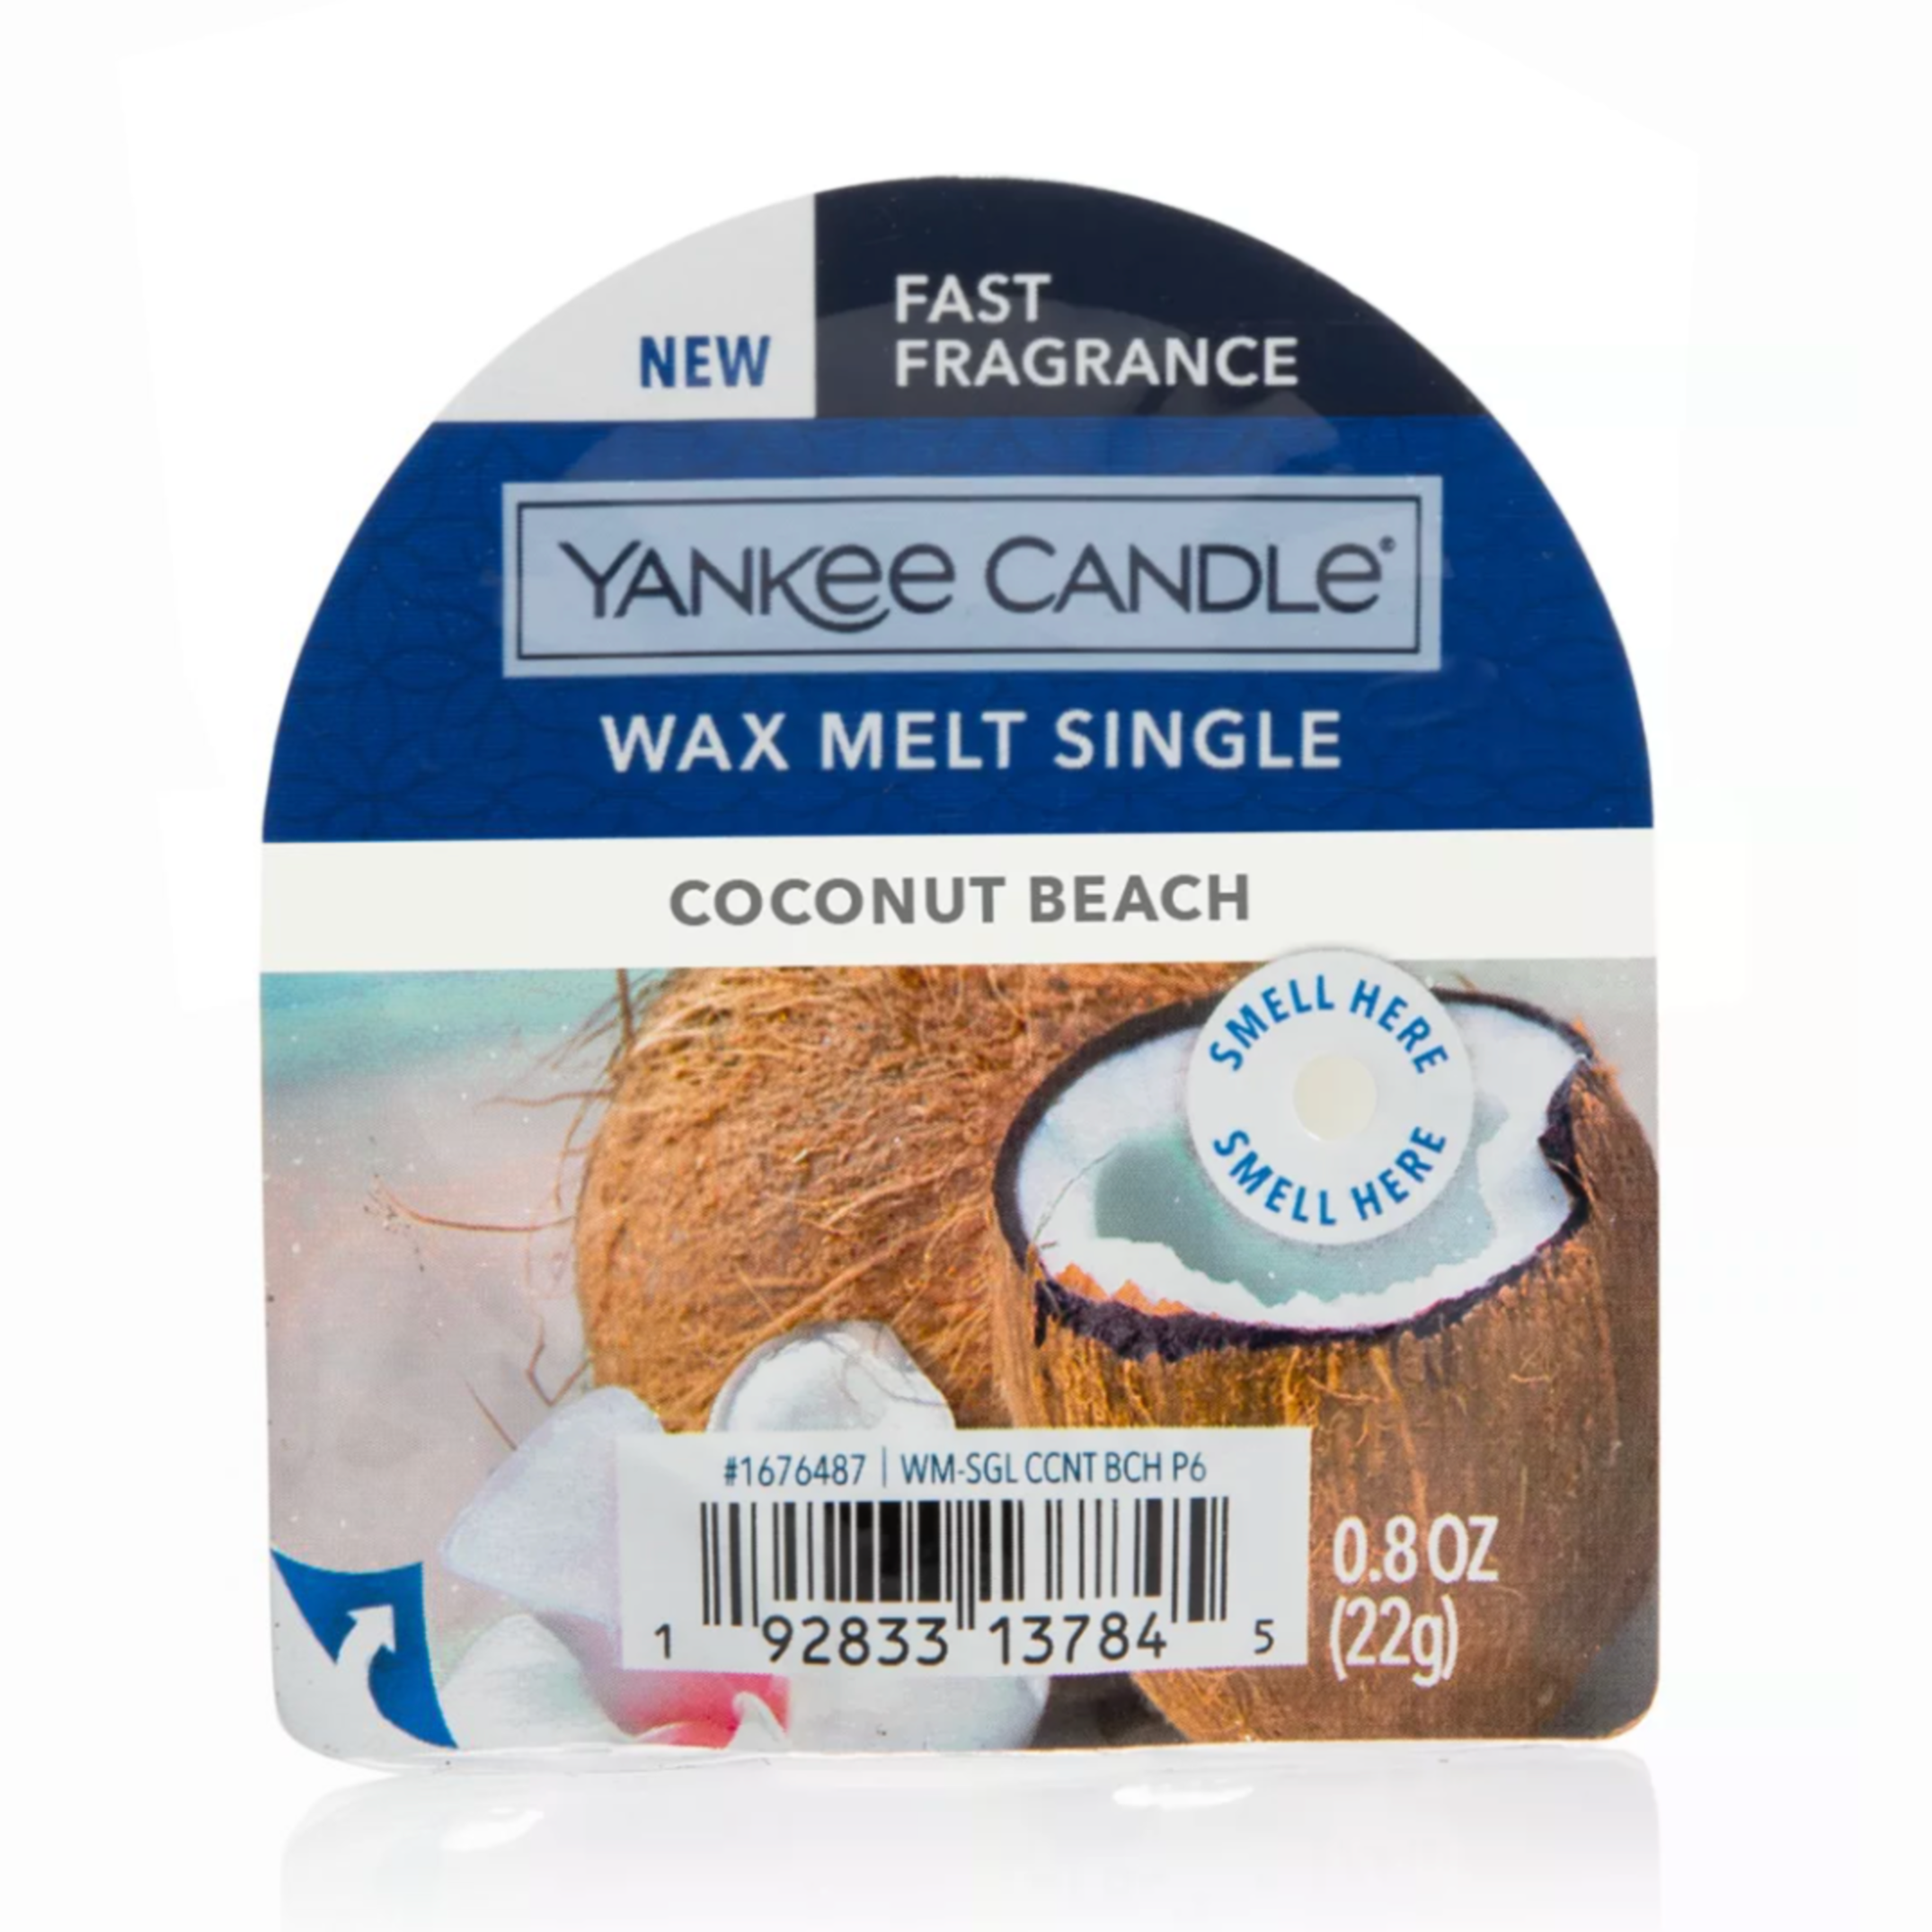 Coconut Beach Wax Melt Single